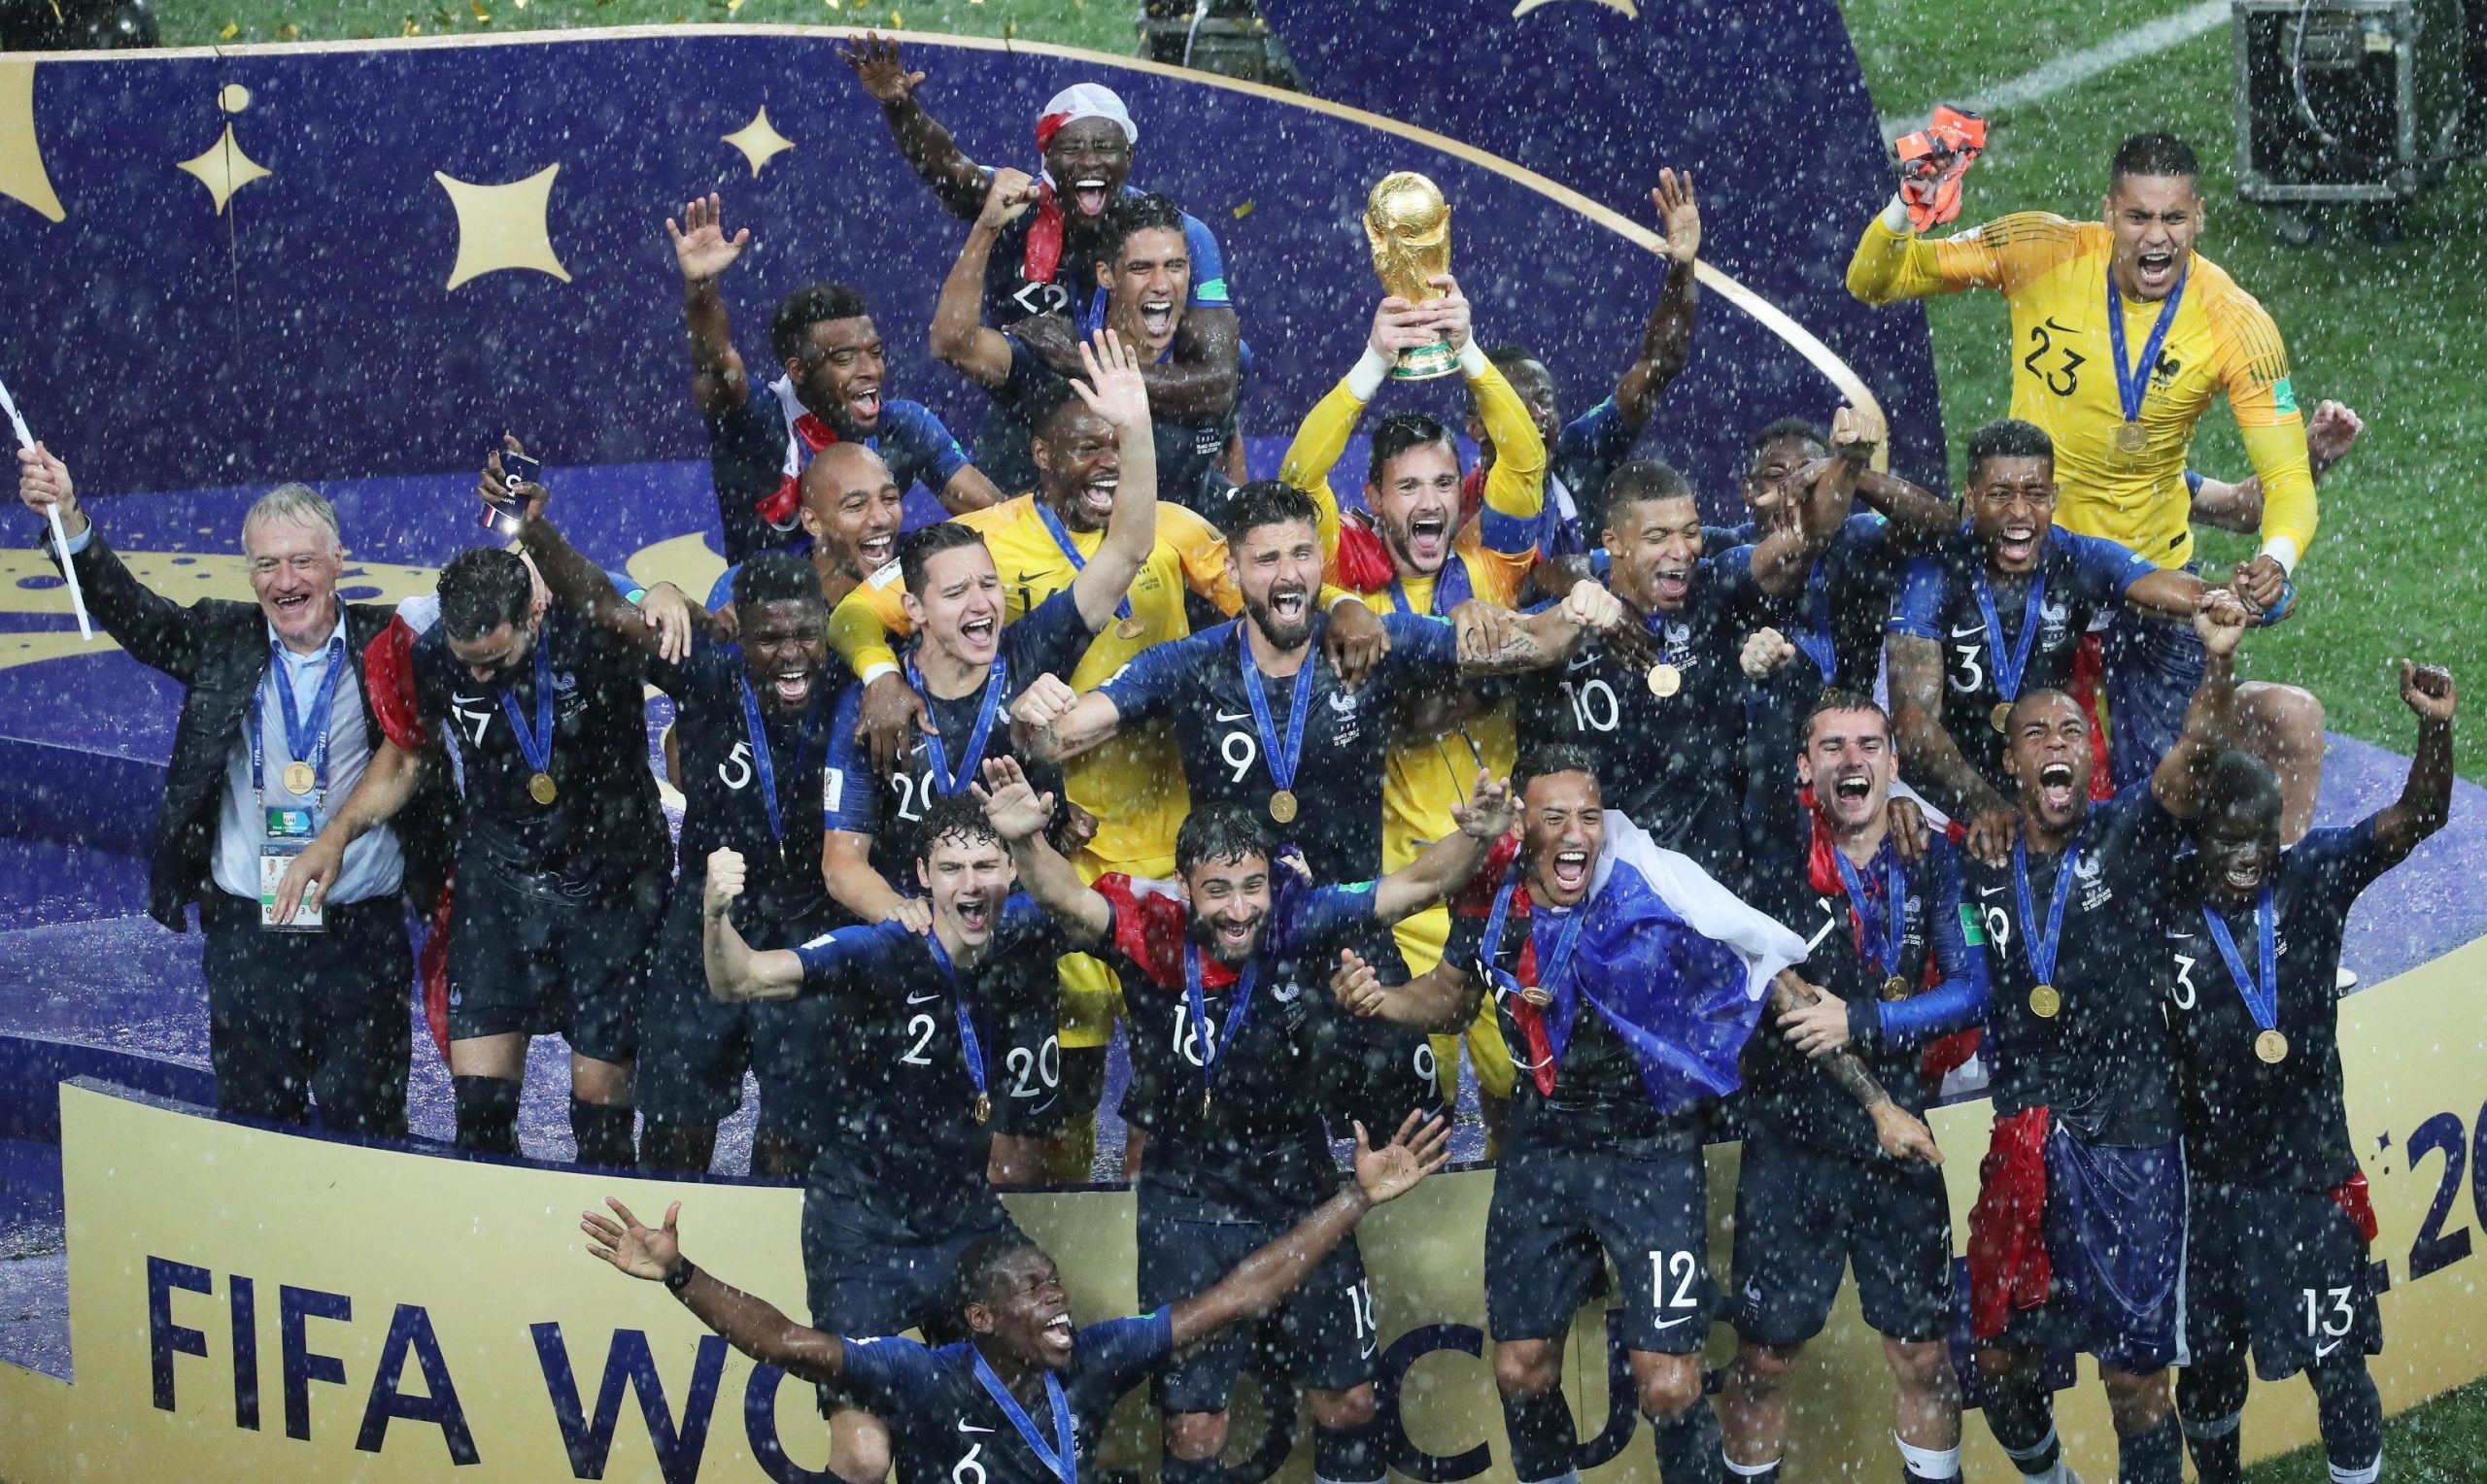 Mondiali 2018: Francia “fortunata” e vincente, onore agli sconfitti, tante le deluse di questa rassegna